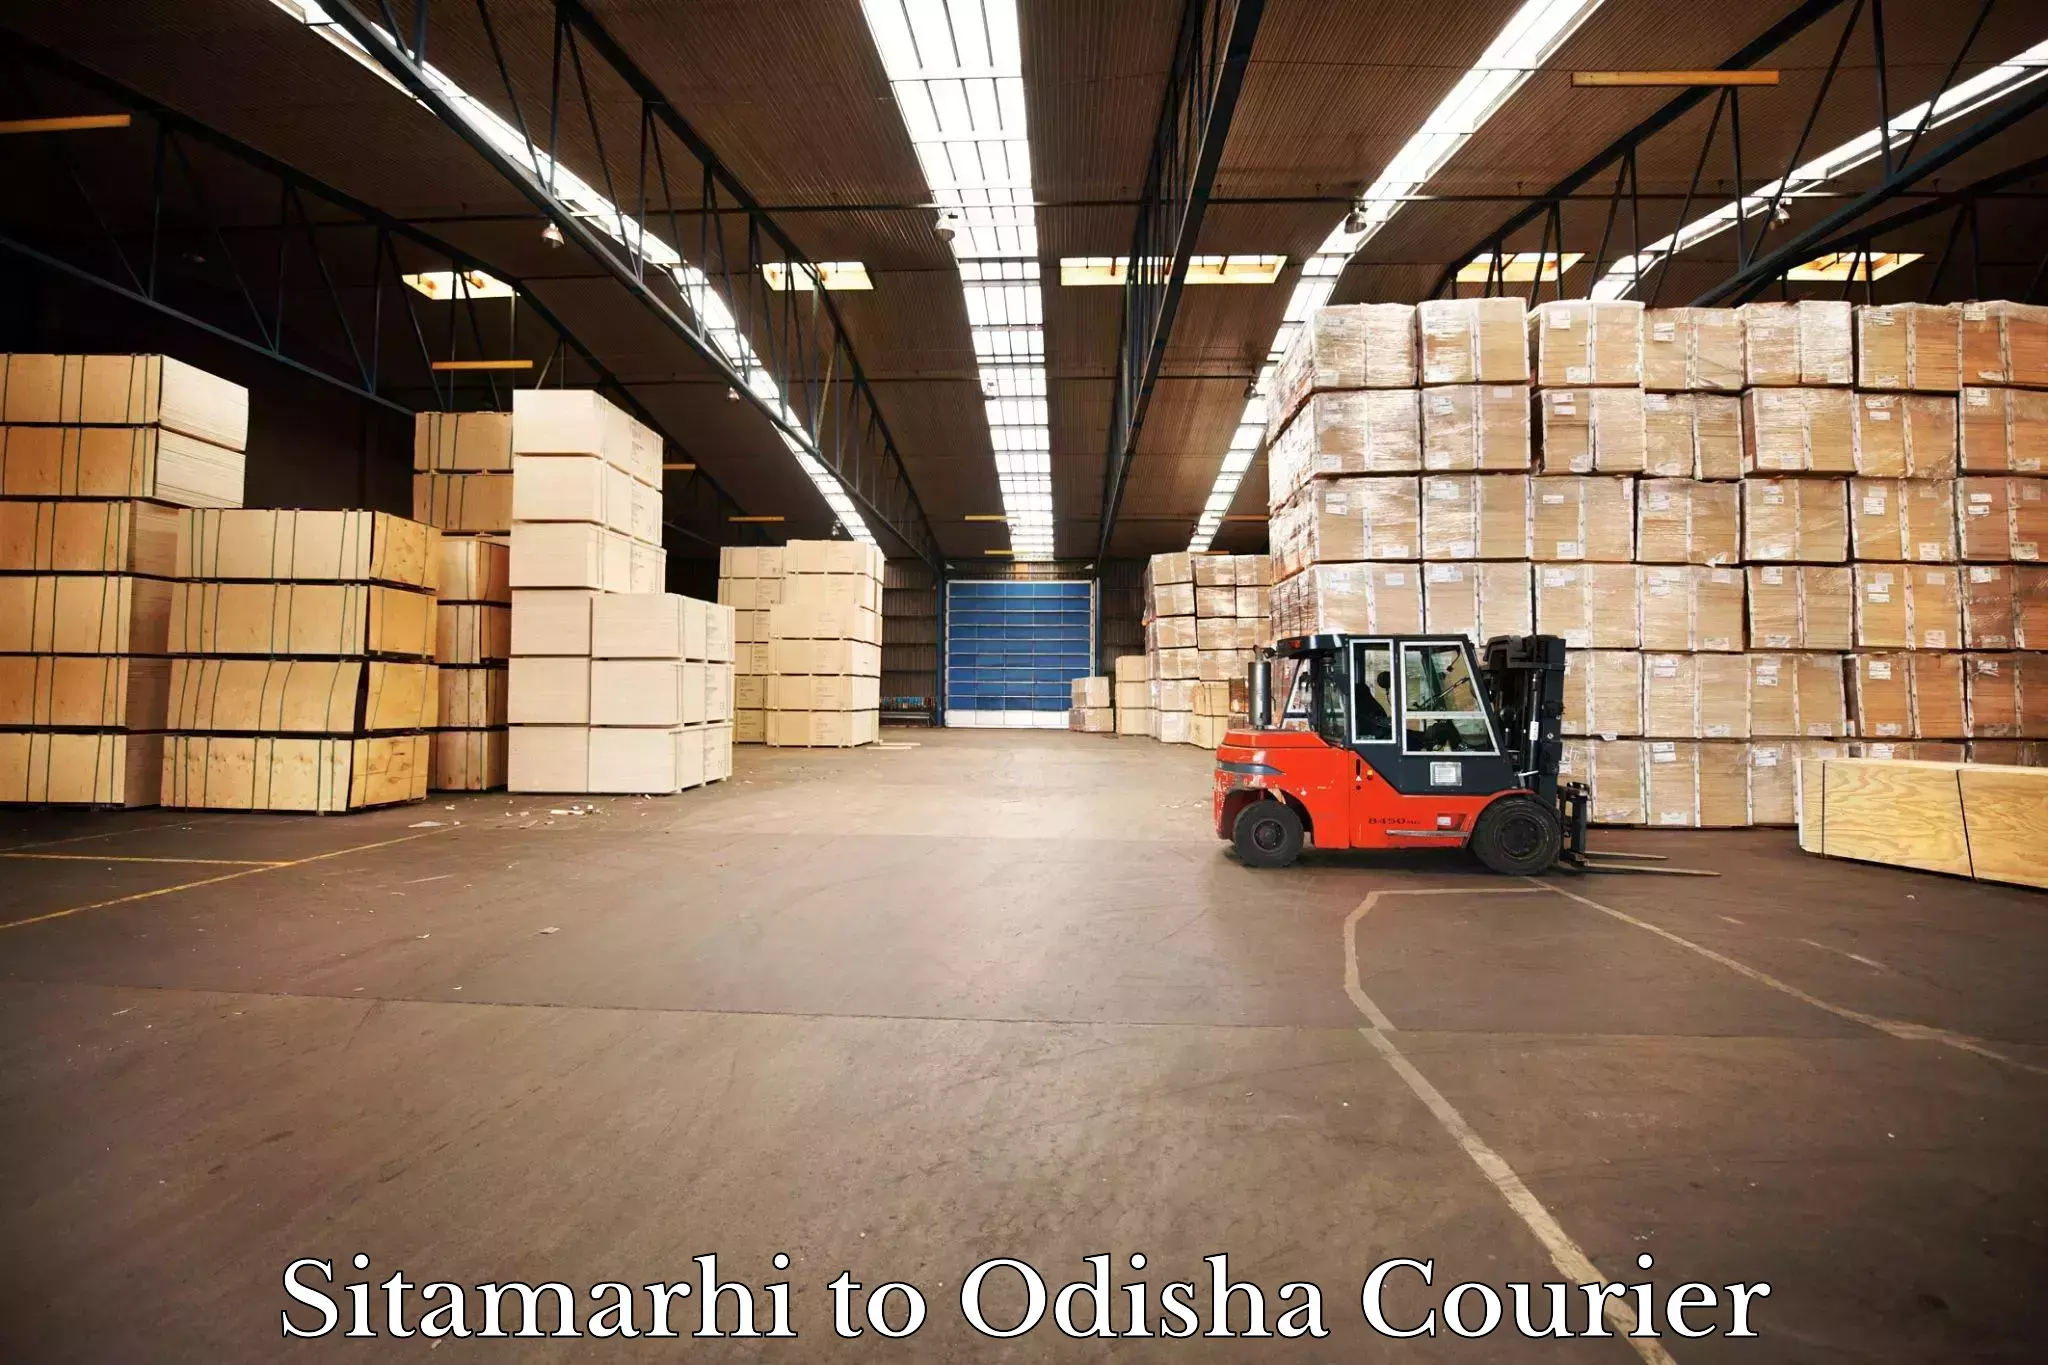 Cargo courier service Sitamarhi to Rourkela